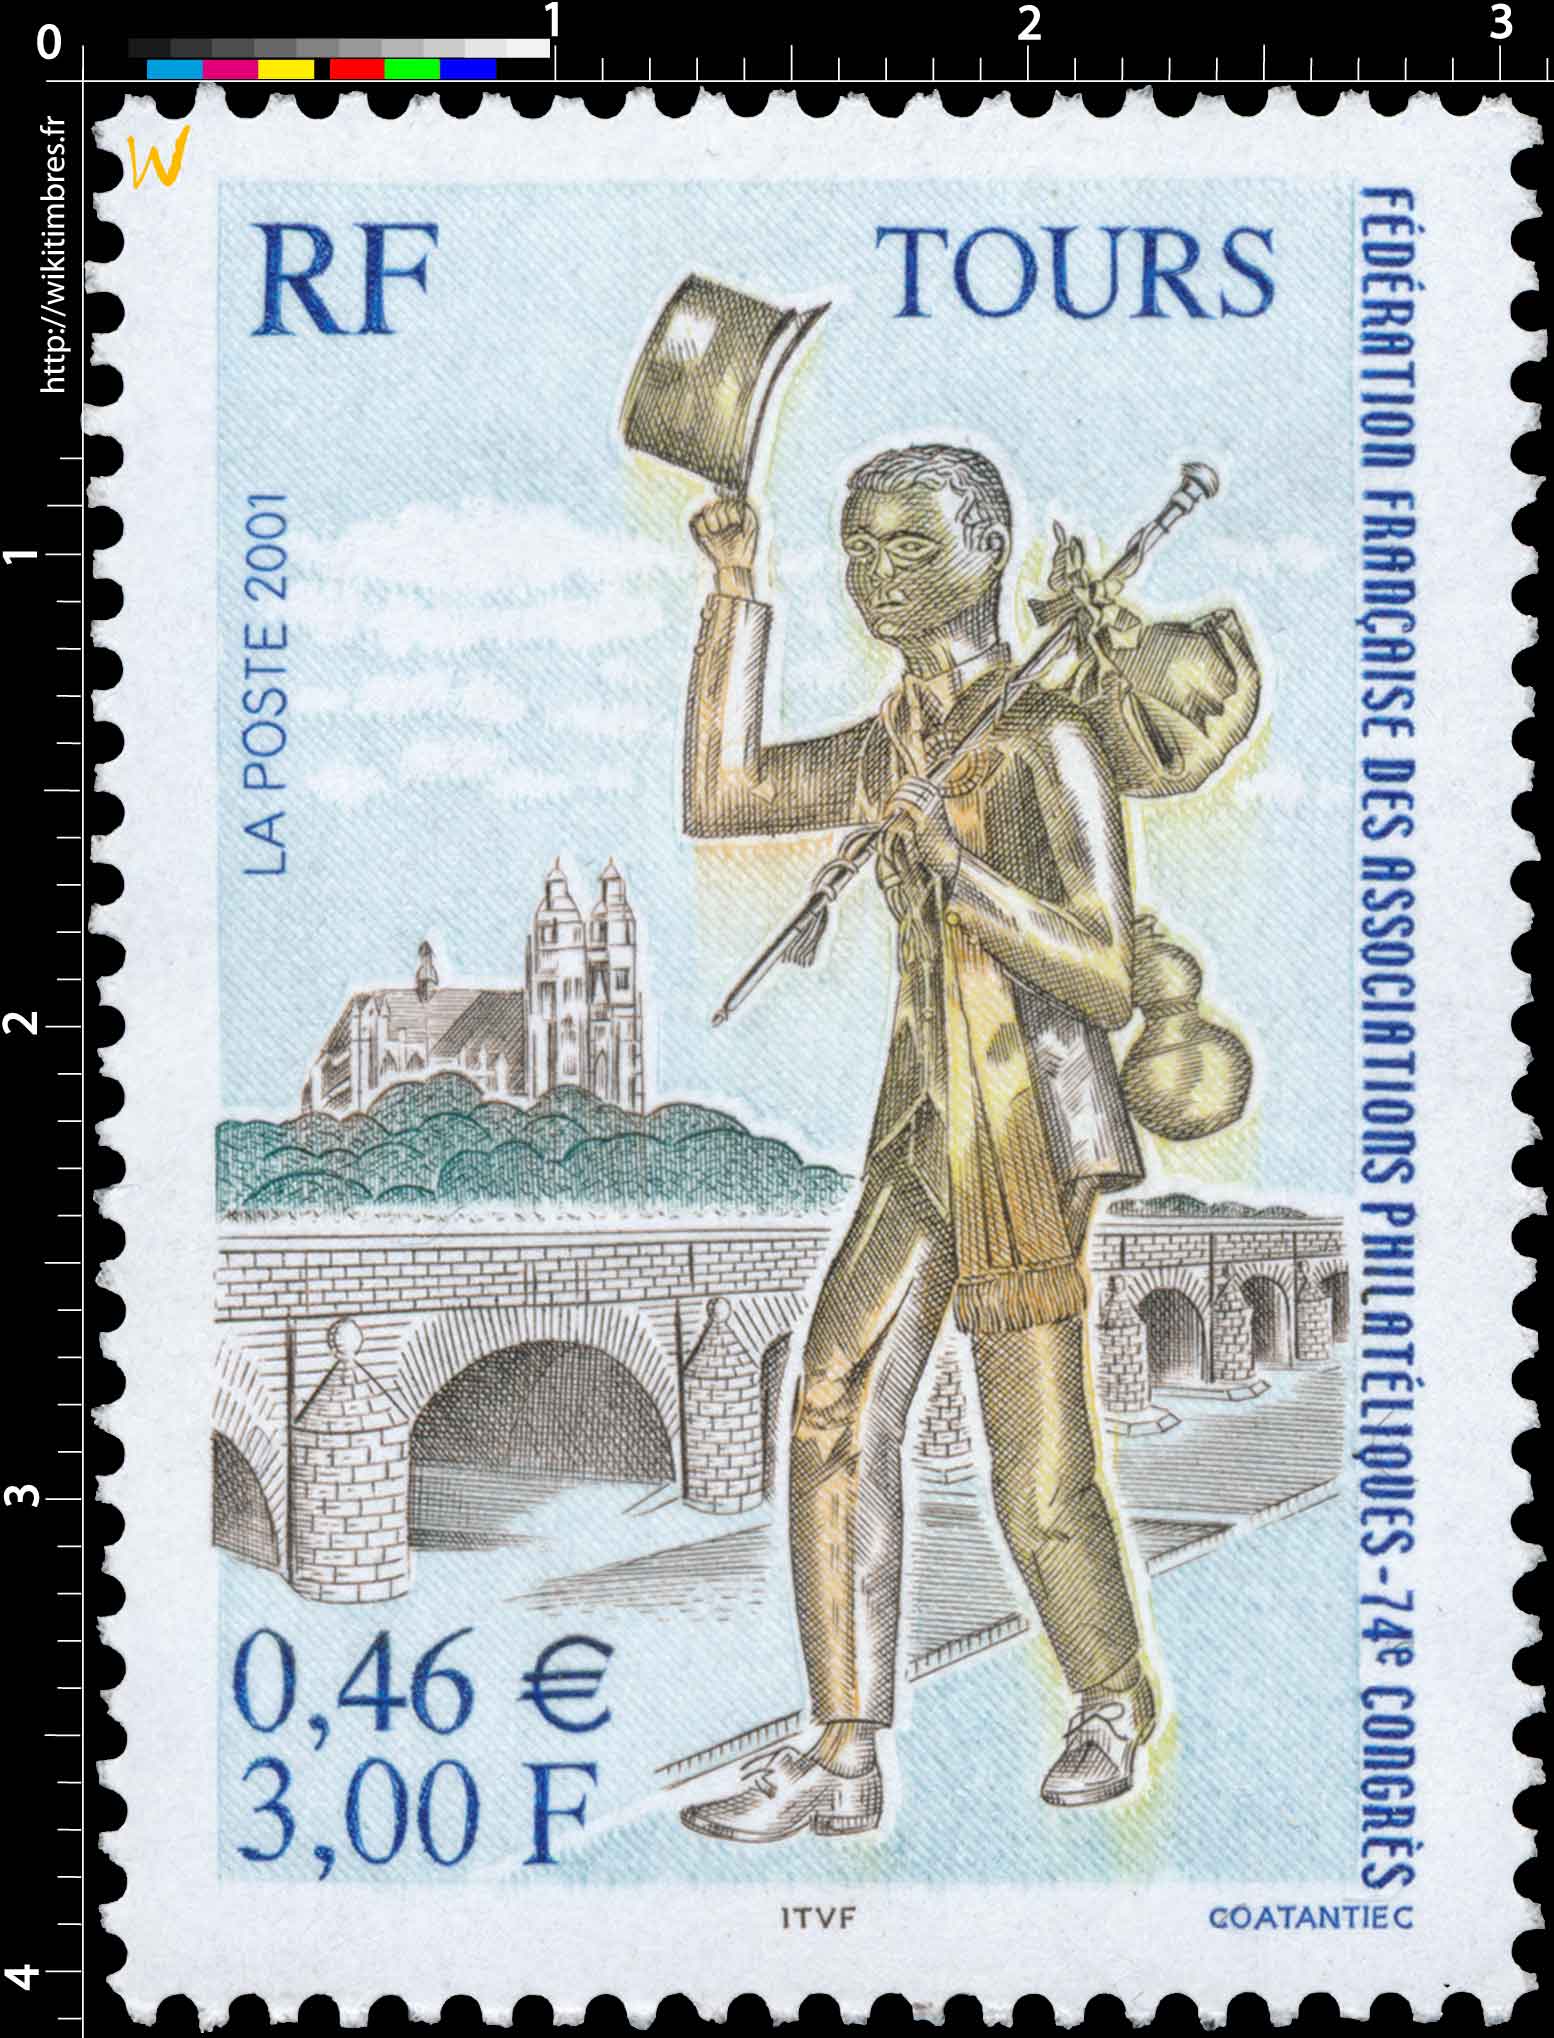 2001 TOURS FÉDÉRATION FRANÇAISE DES ASSOCIATION PHILATÉLIQUES - 74e CONGRÈS